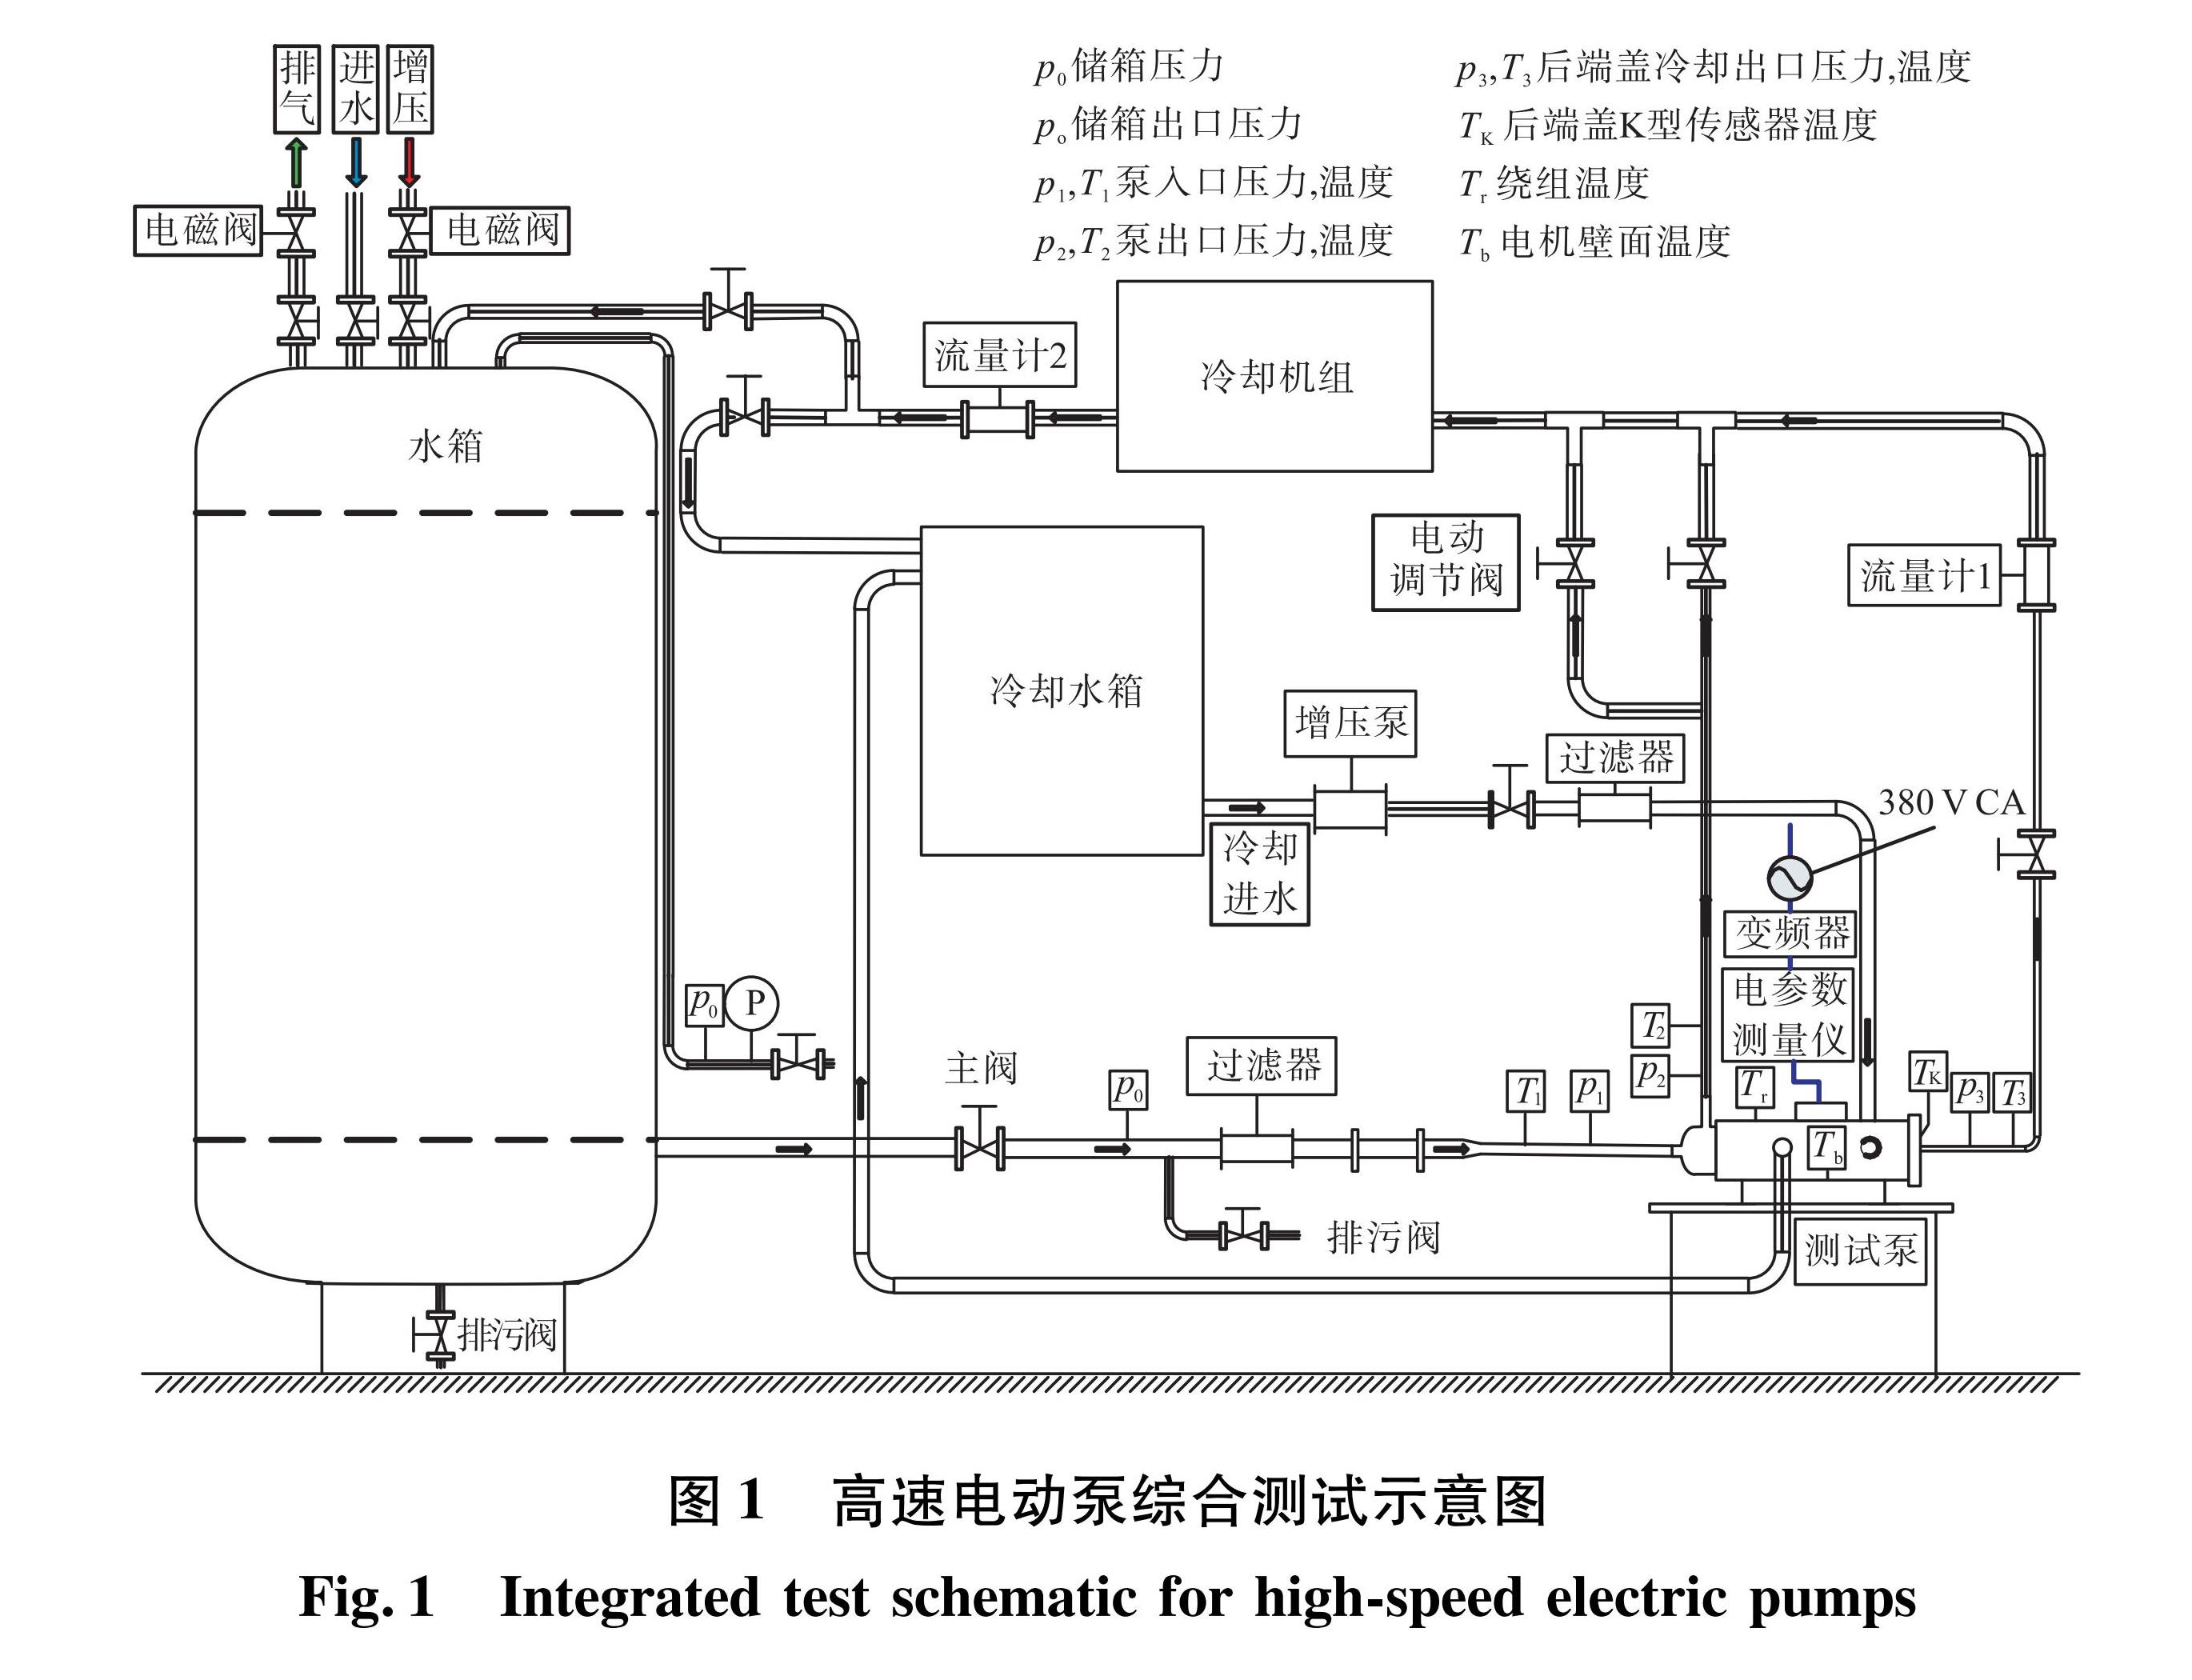 图1 高速电动泵综合测试示意图<br/>Fig.1 Integrated test schematic for high-speed electric pumps